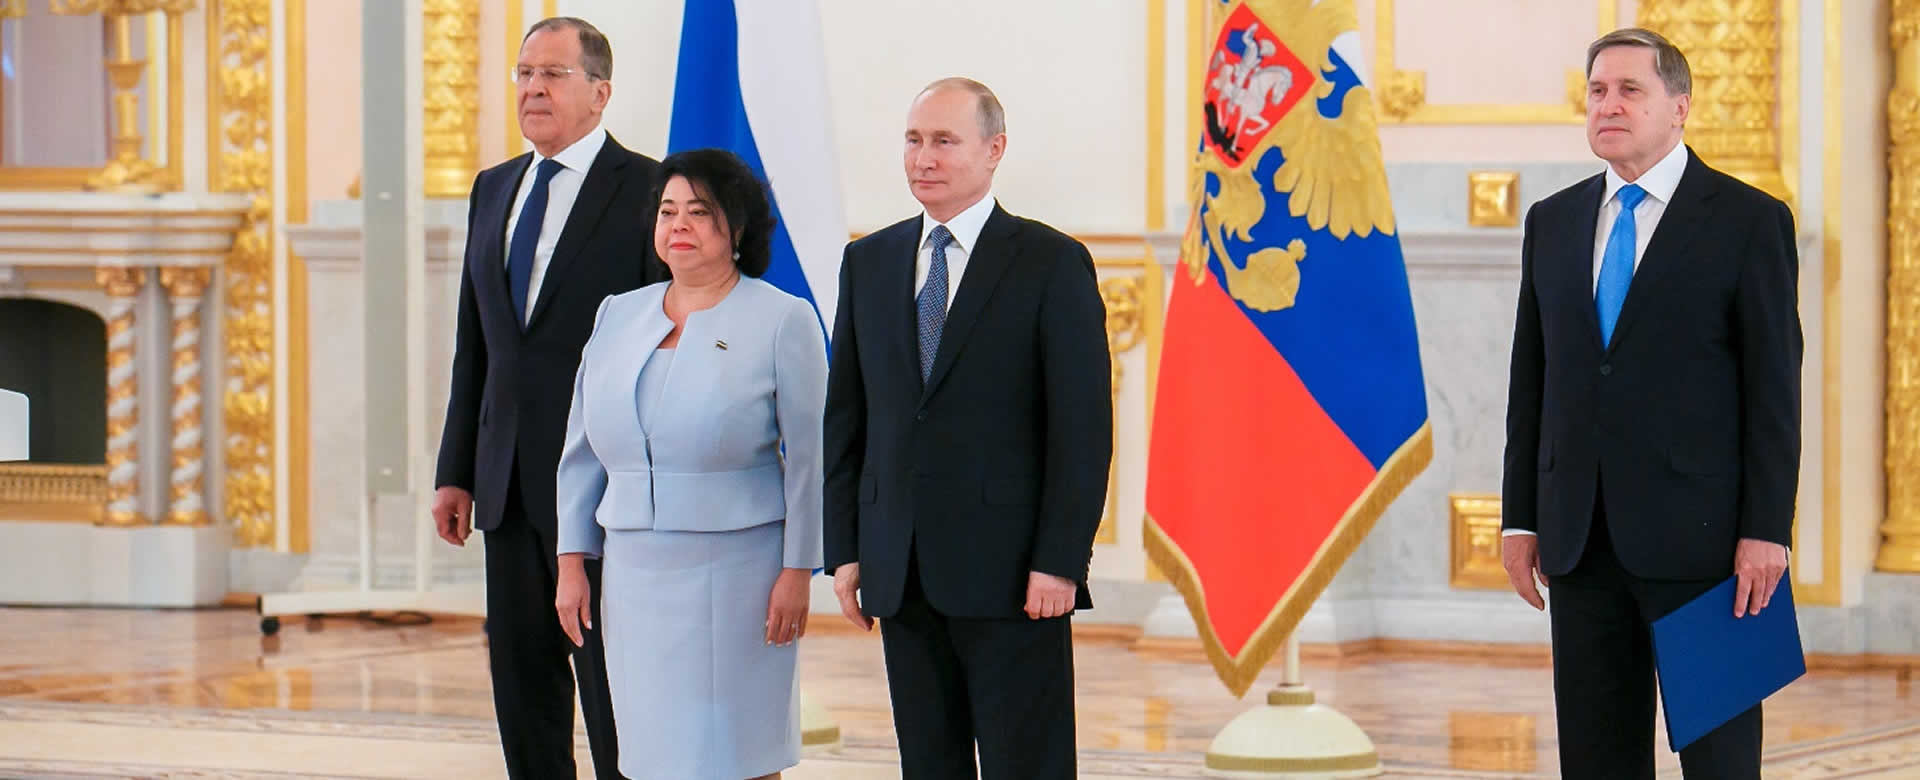 Presidente Putin recibe cartas credenciales de embajadora nicaragüense